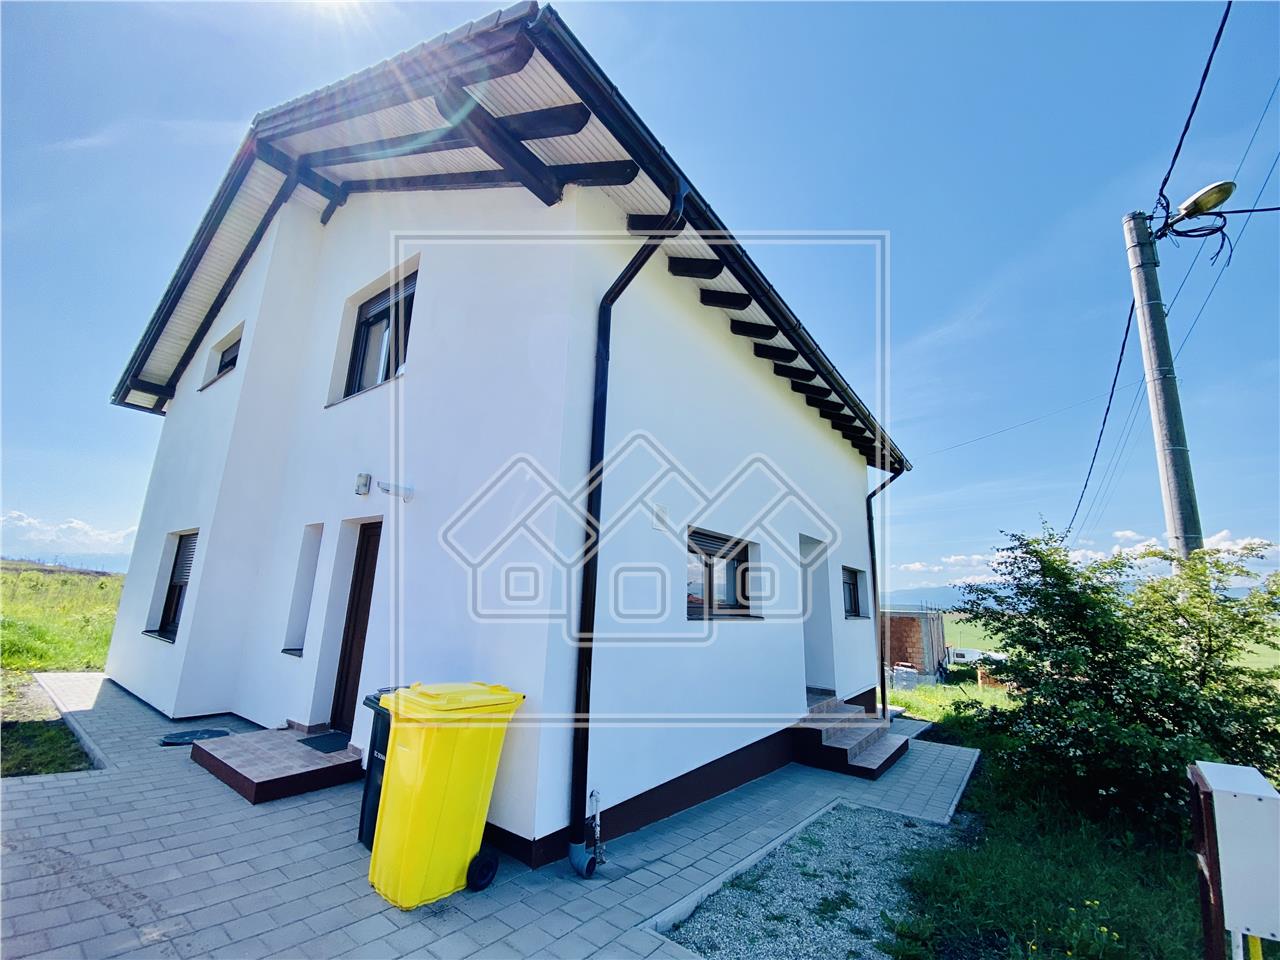 Casa de vanzare in Sibiu - individuala - 135 mp utili - Bavaria Stadt